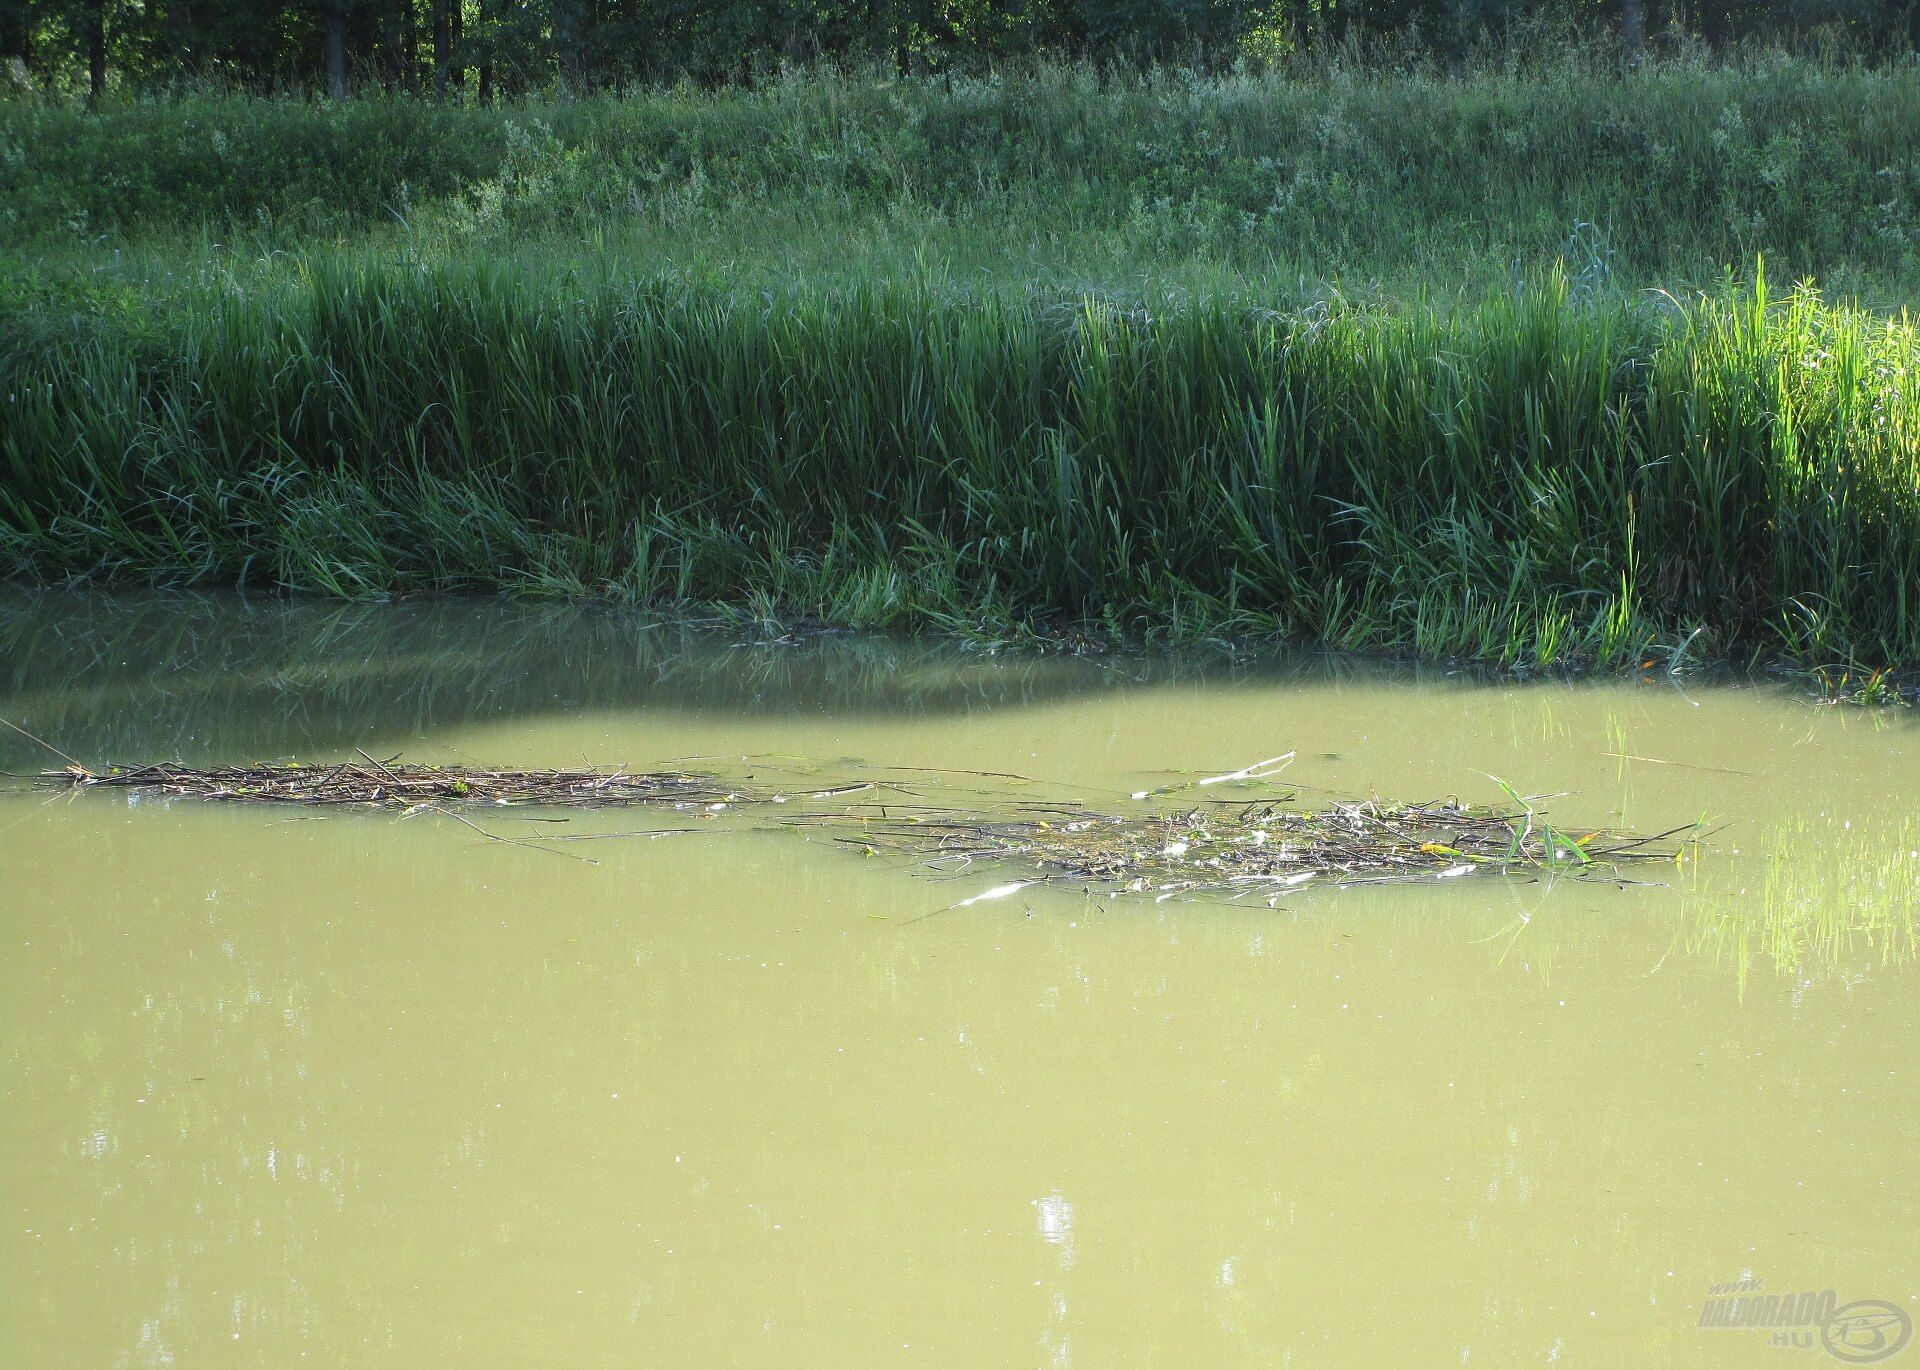 Az esők után mindenféle növénymaradvány úszik a vízen, és jól látszik a képen az is, hogy milyen zavarossá válhat a folyó